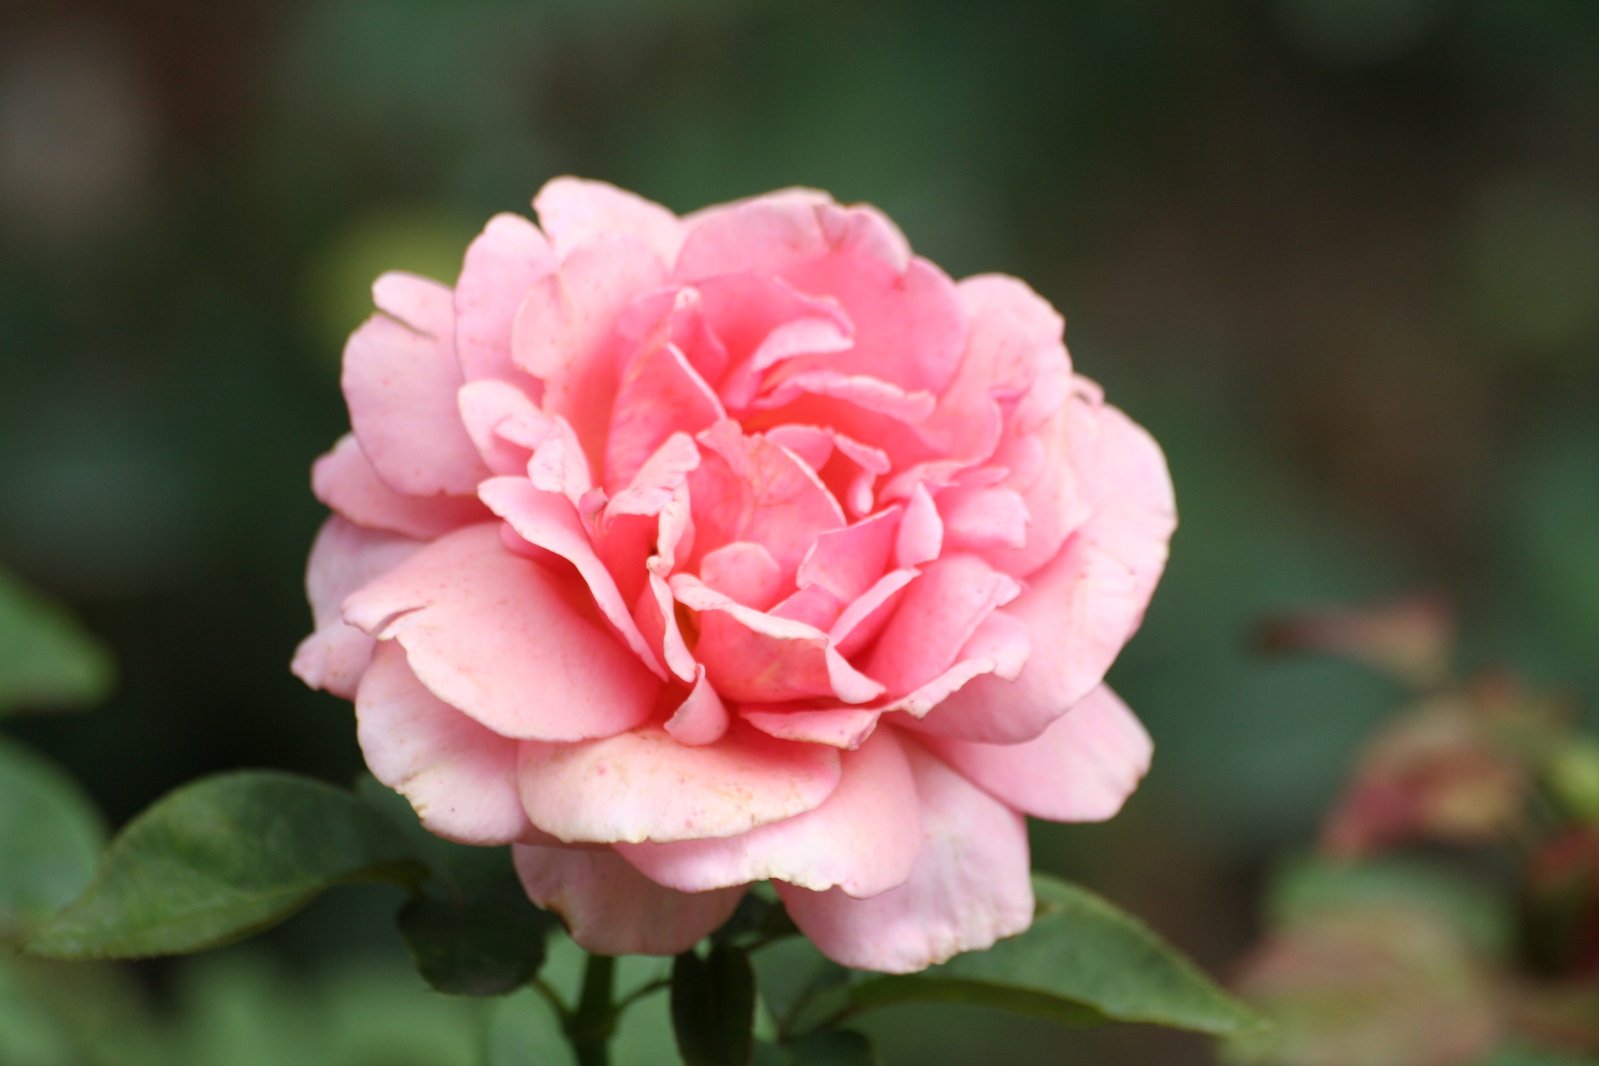 a closeup s of a pink flower